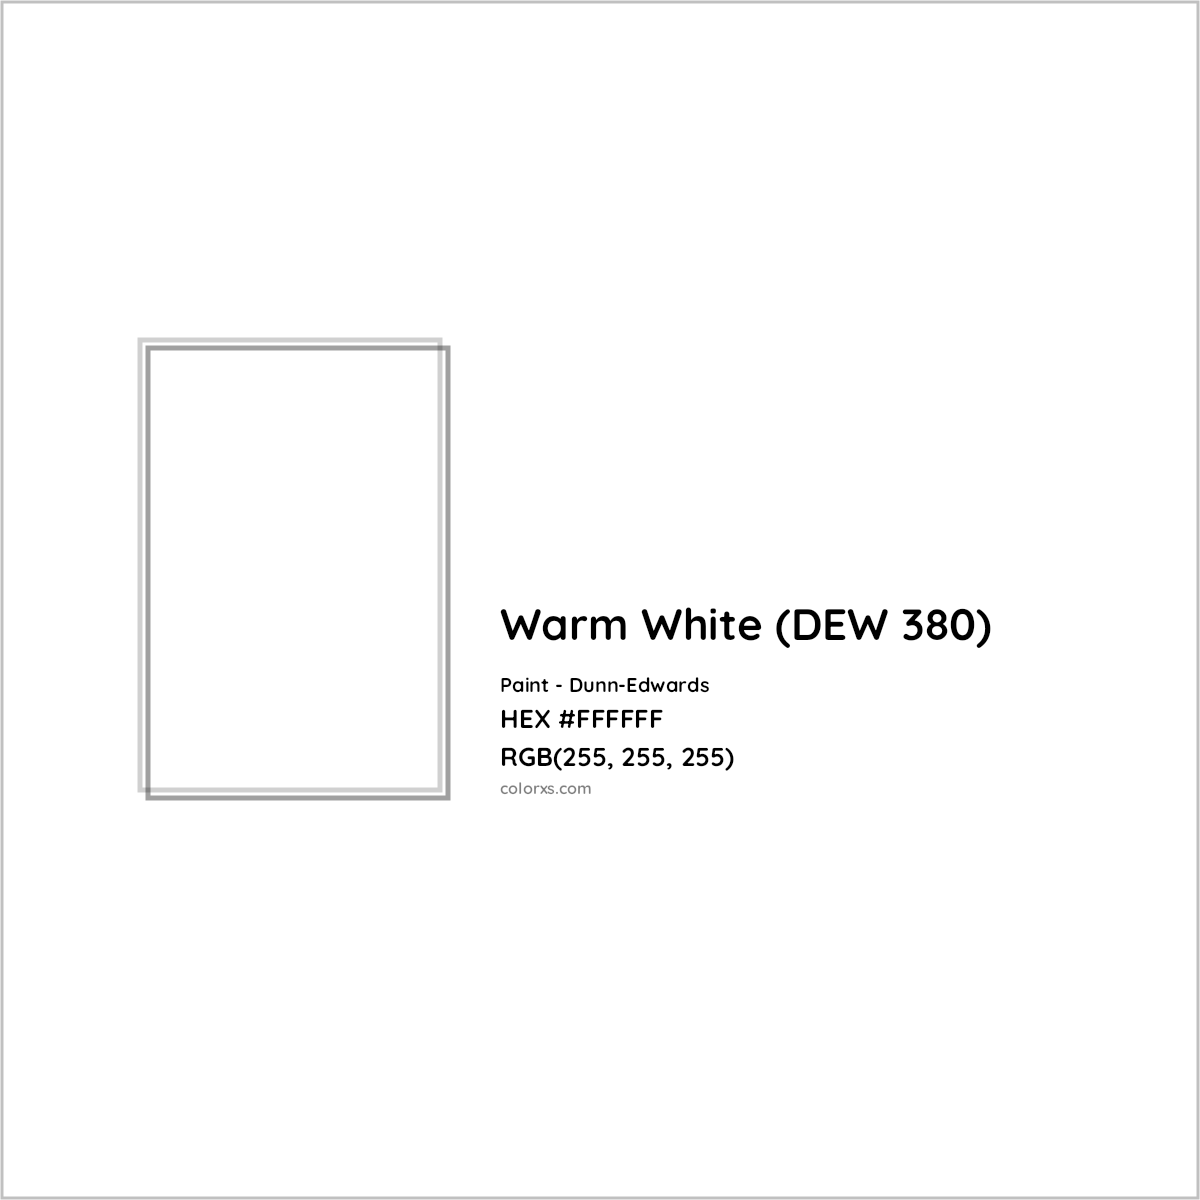 HEX #FFFFFF Warm White (DEW 380) Paint Dunn-Edwards - Color Code